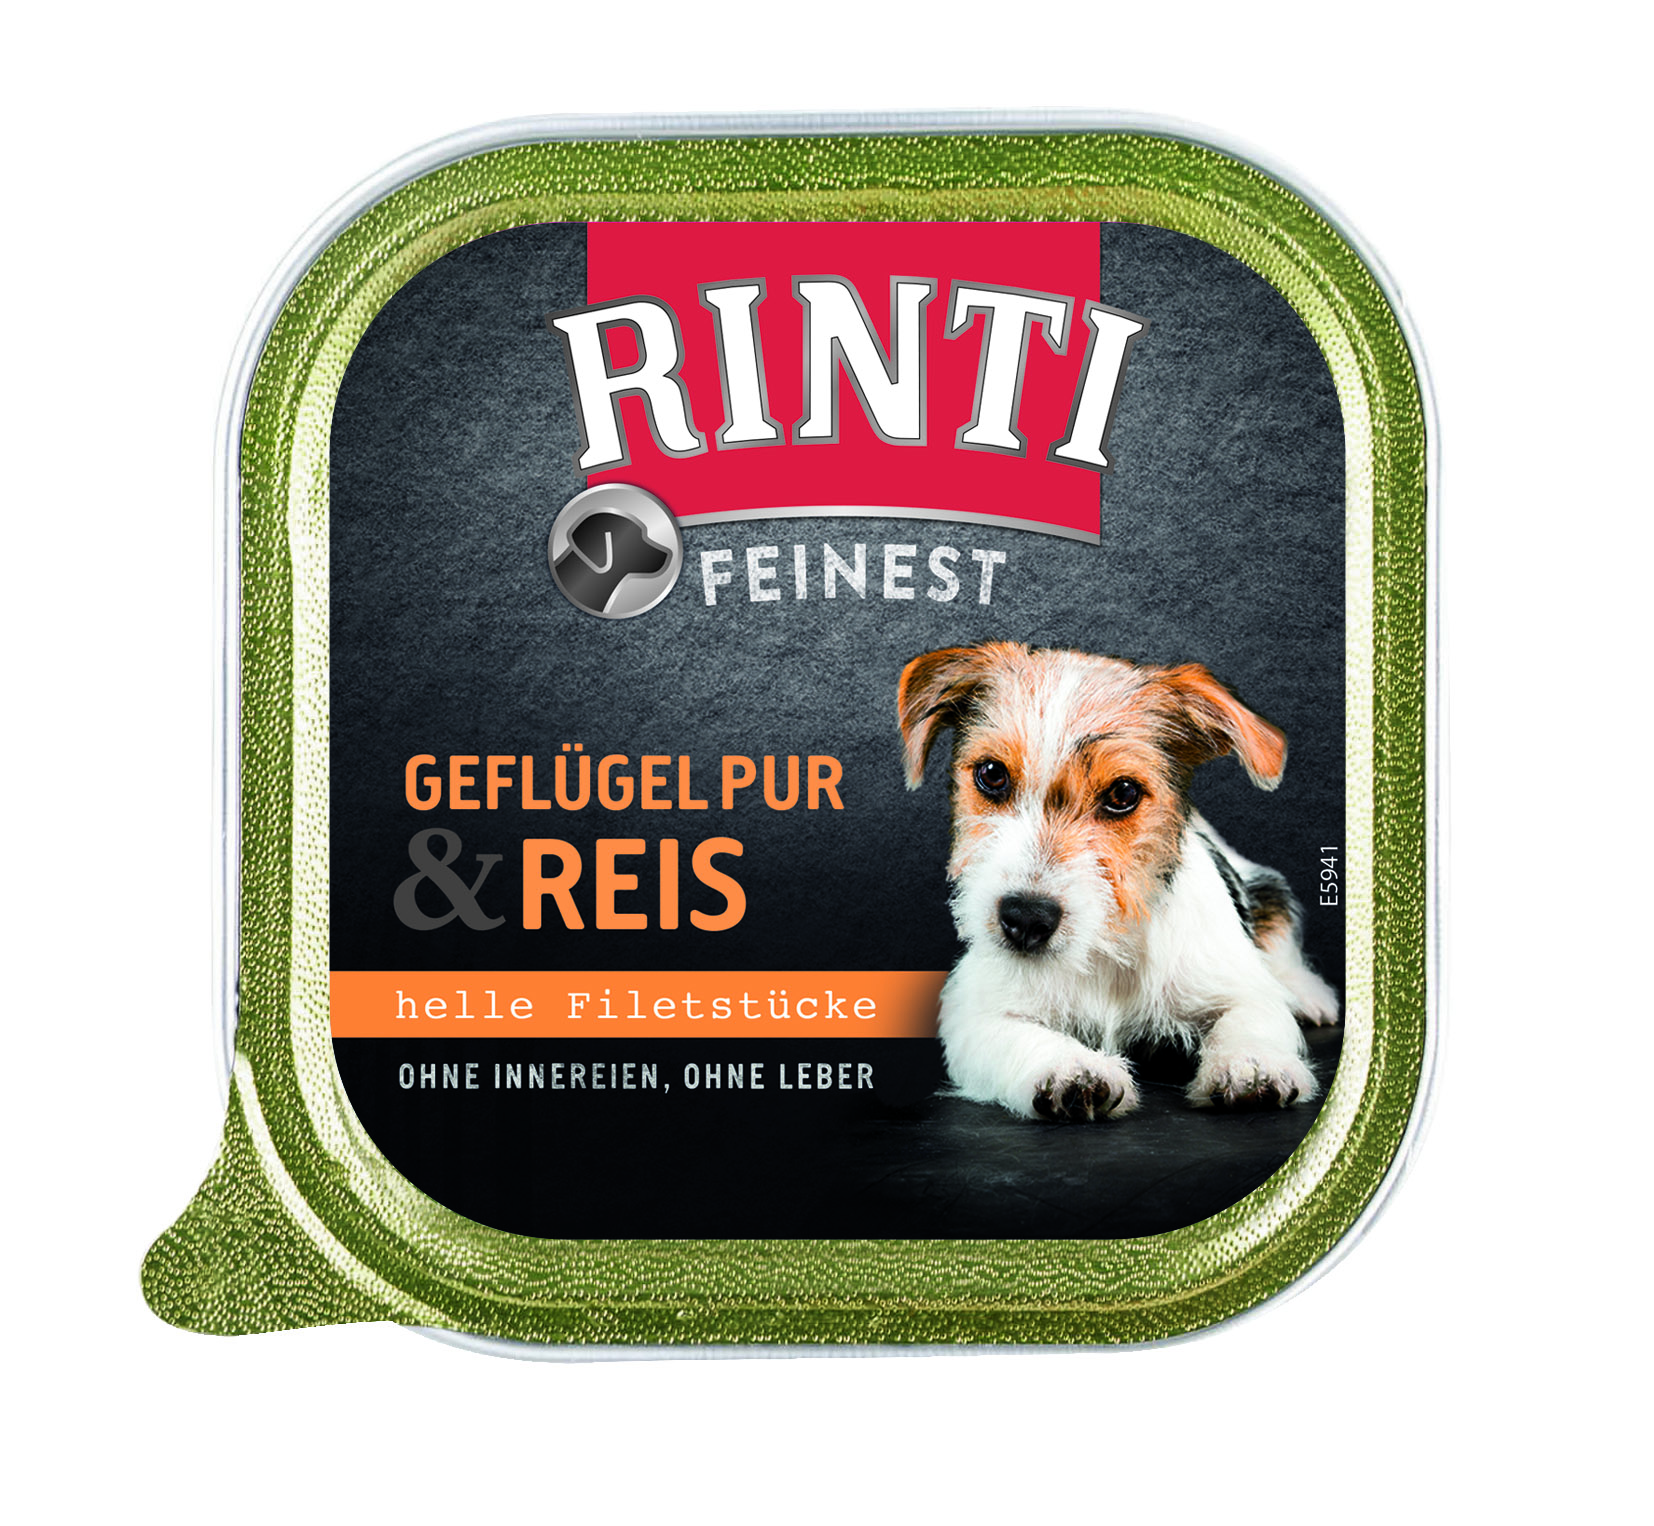 Rinti Feinest - Geflügel pur und Reis